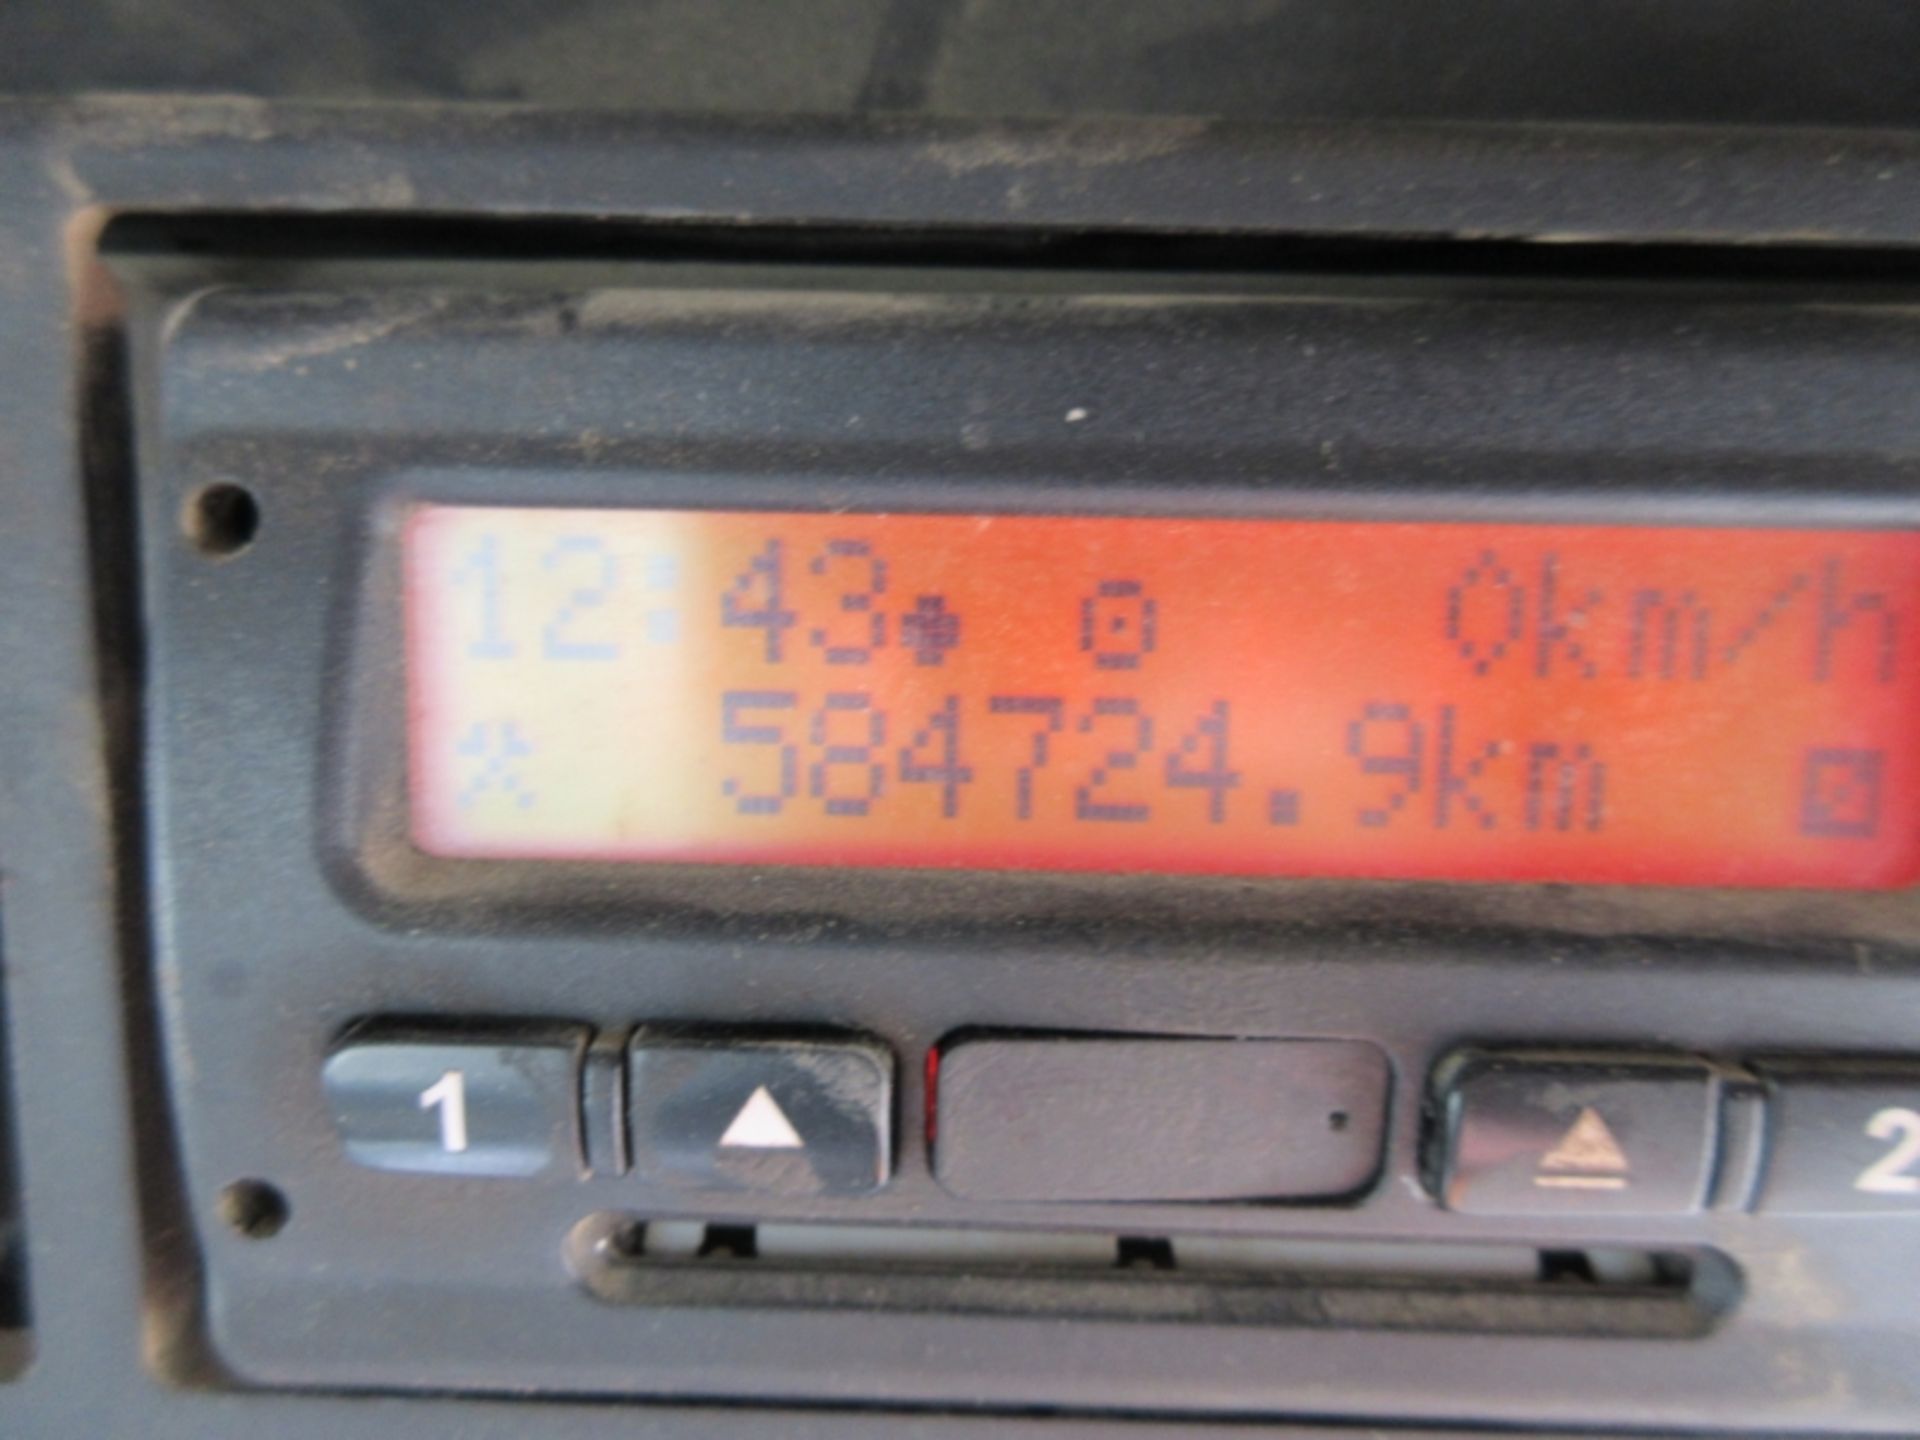 DAF TRUCKS CF 85.360 - 12900cc Day Cab Diesel - VIN: XLRAD85MC0E767246 - Year: 2007 - 584,724 km - - Image 5 of 8